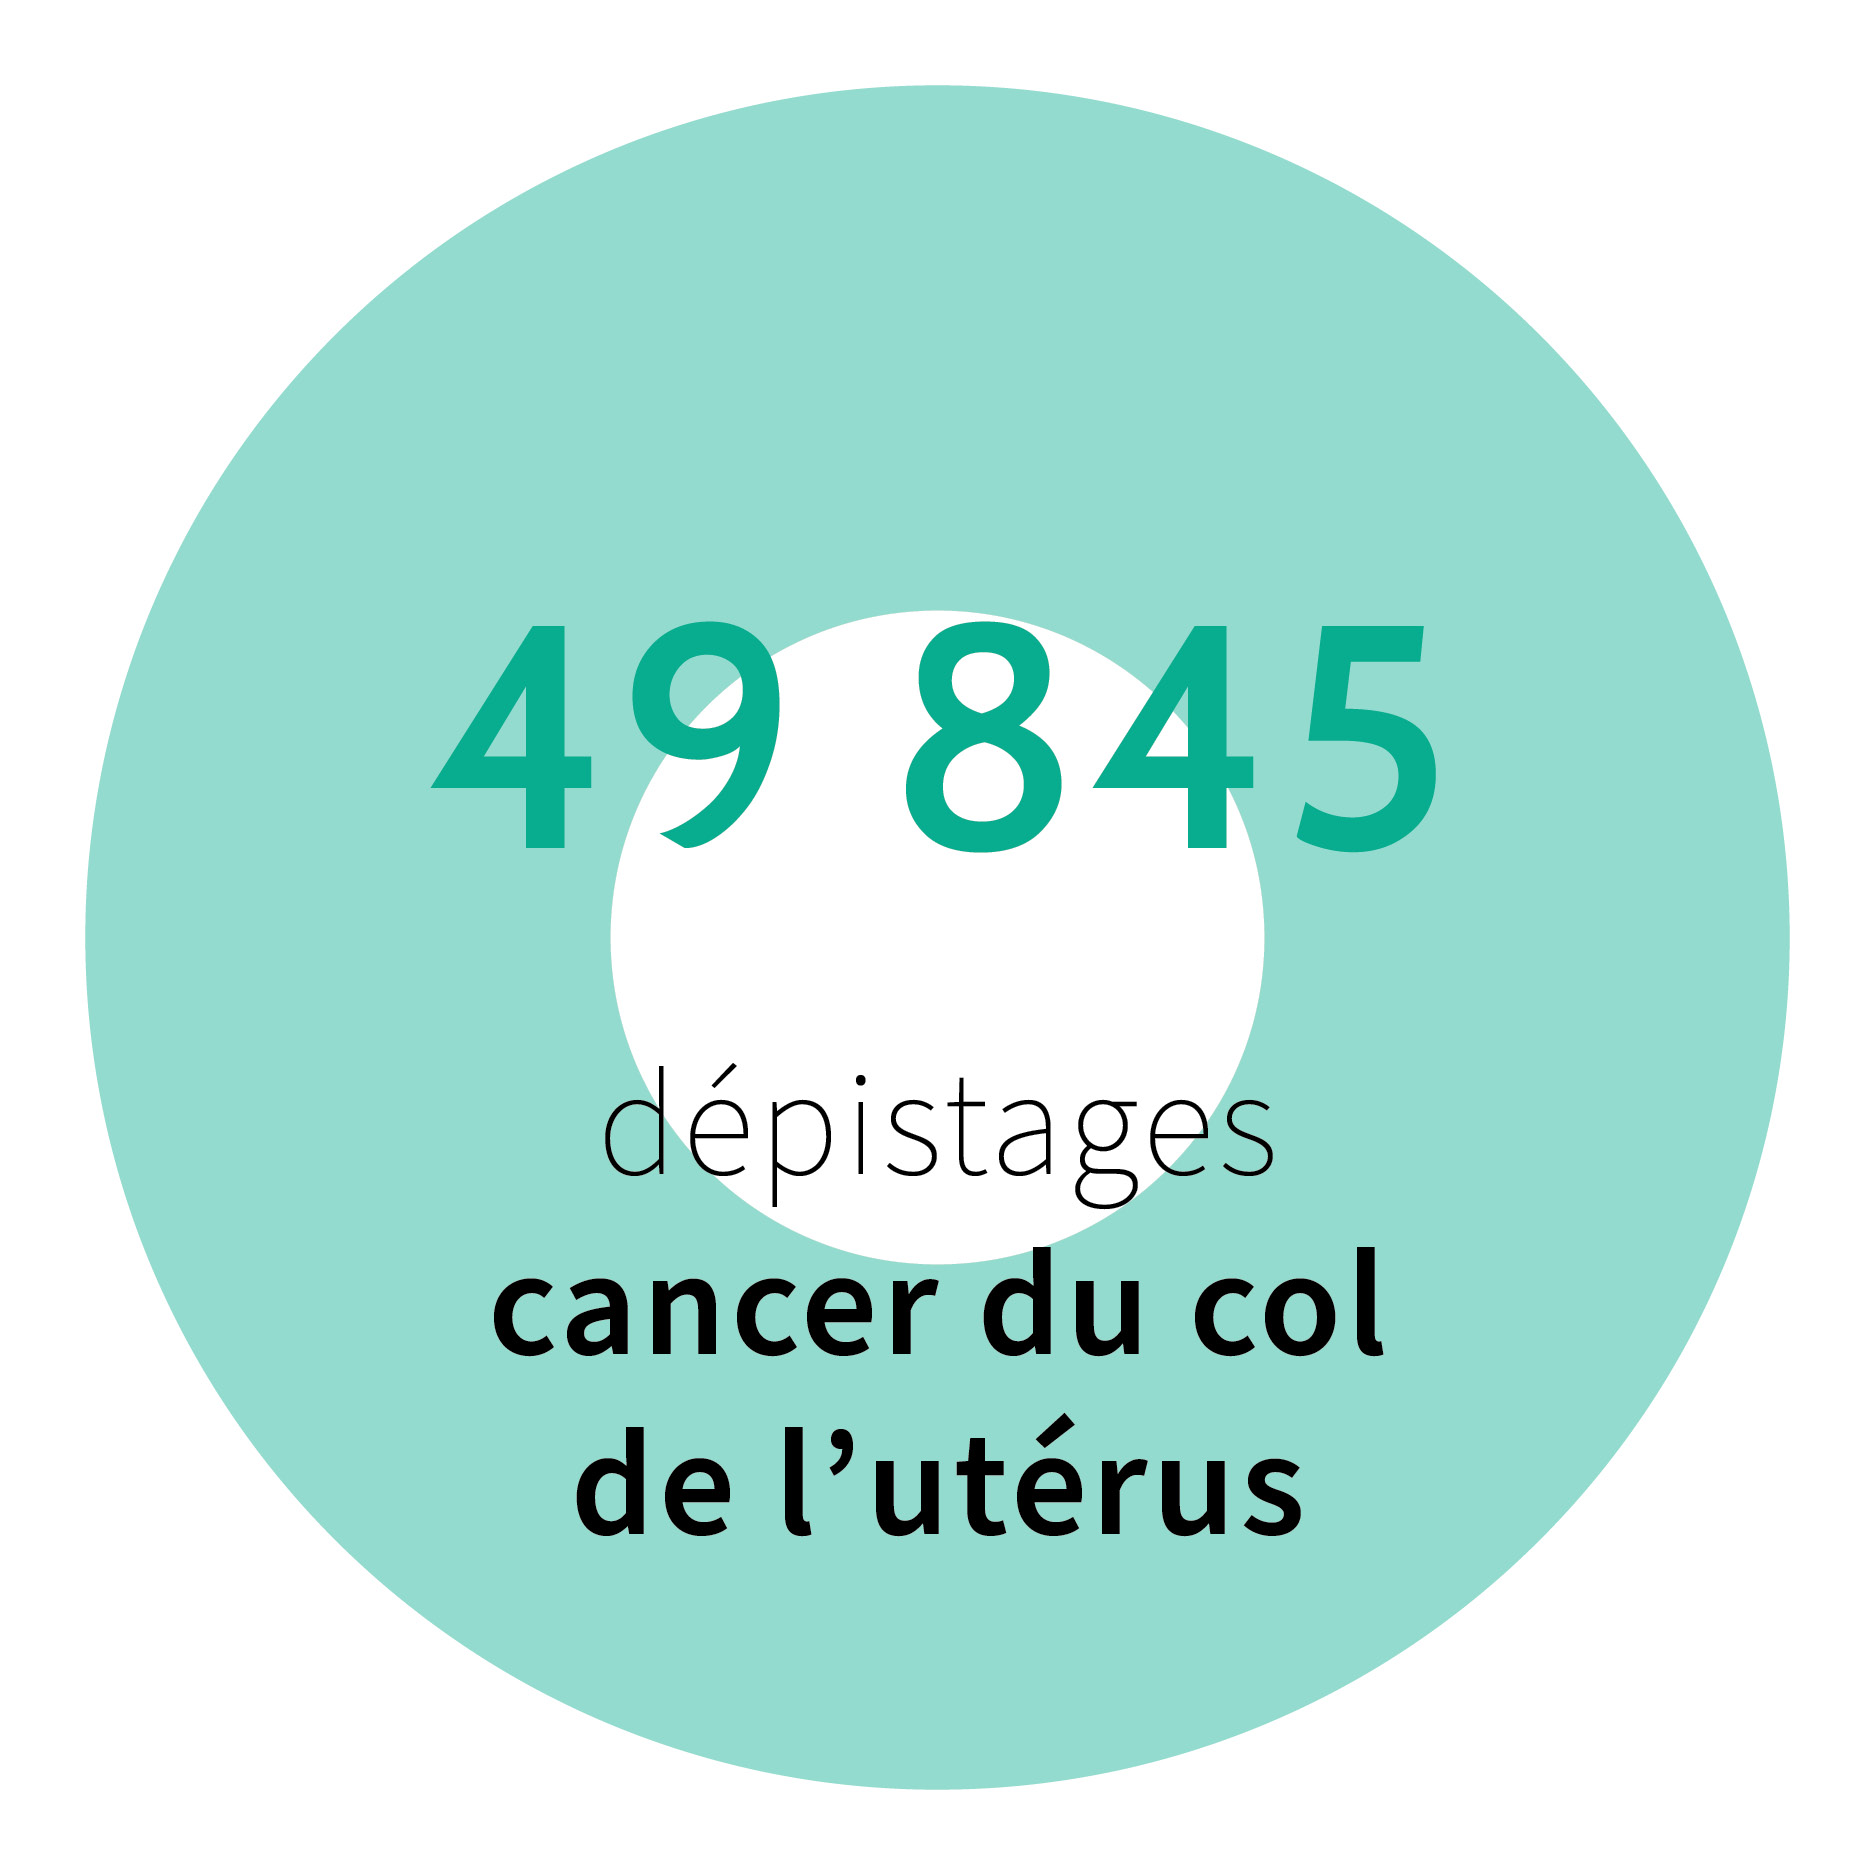 49 845 dépistages cancer du col de l'utérus